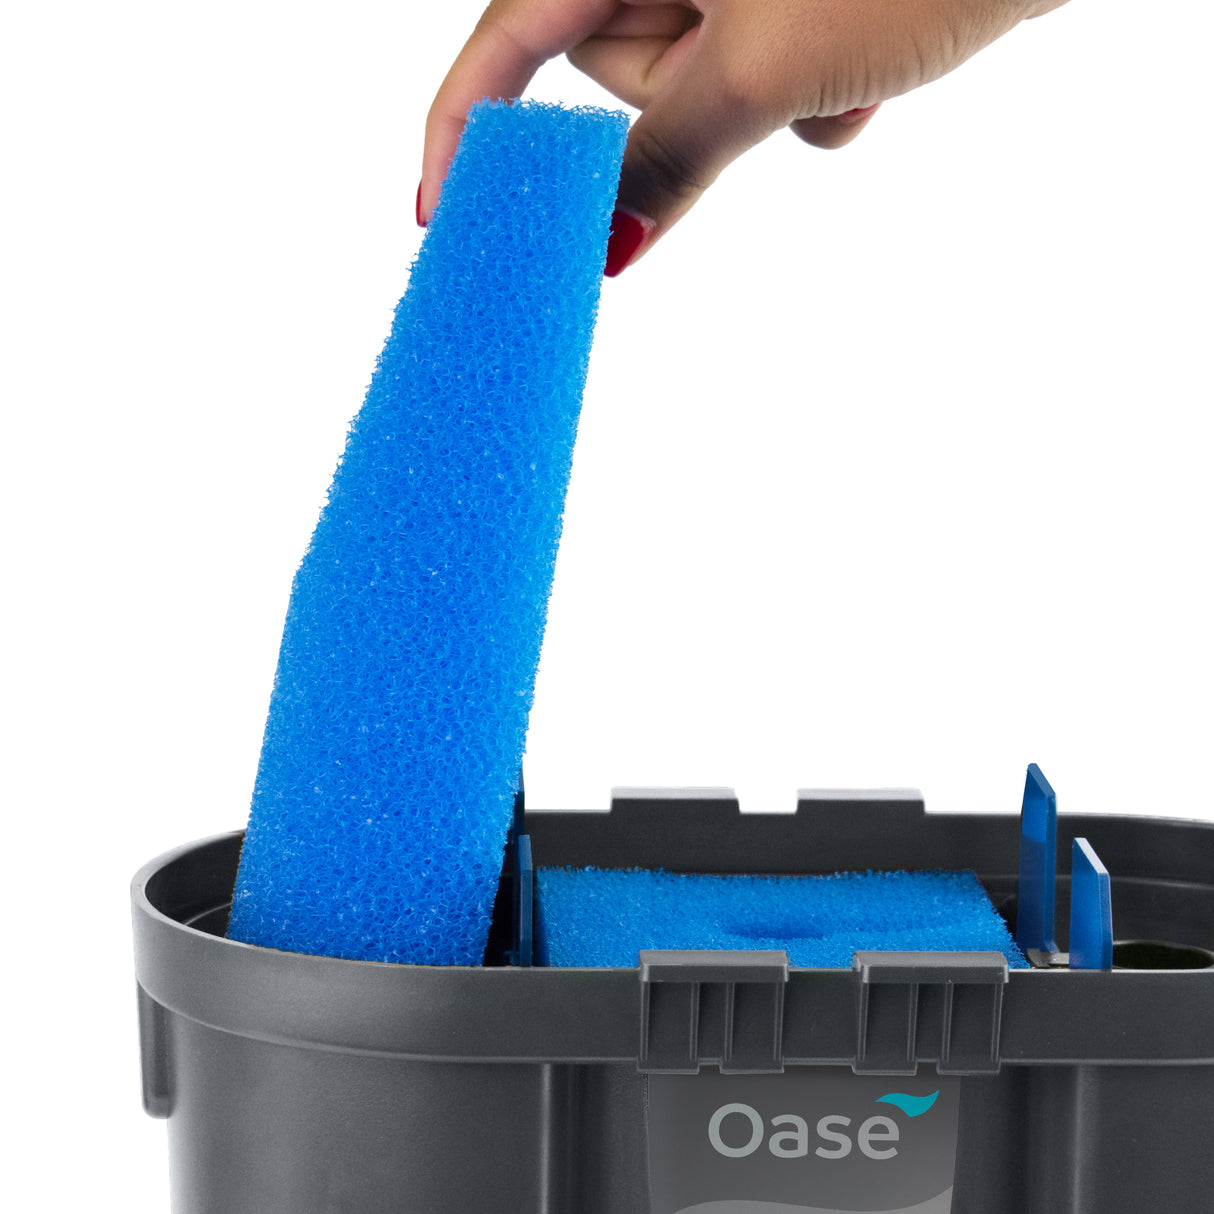 OASE FiltoSmart 100 filter foam